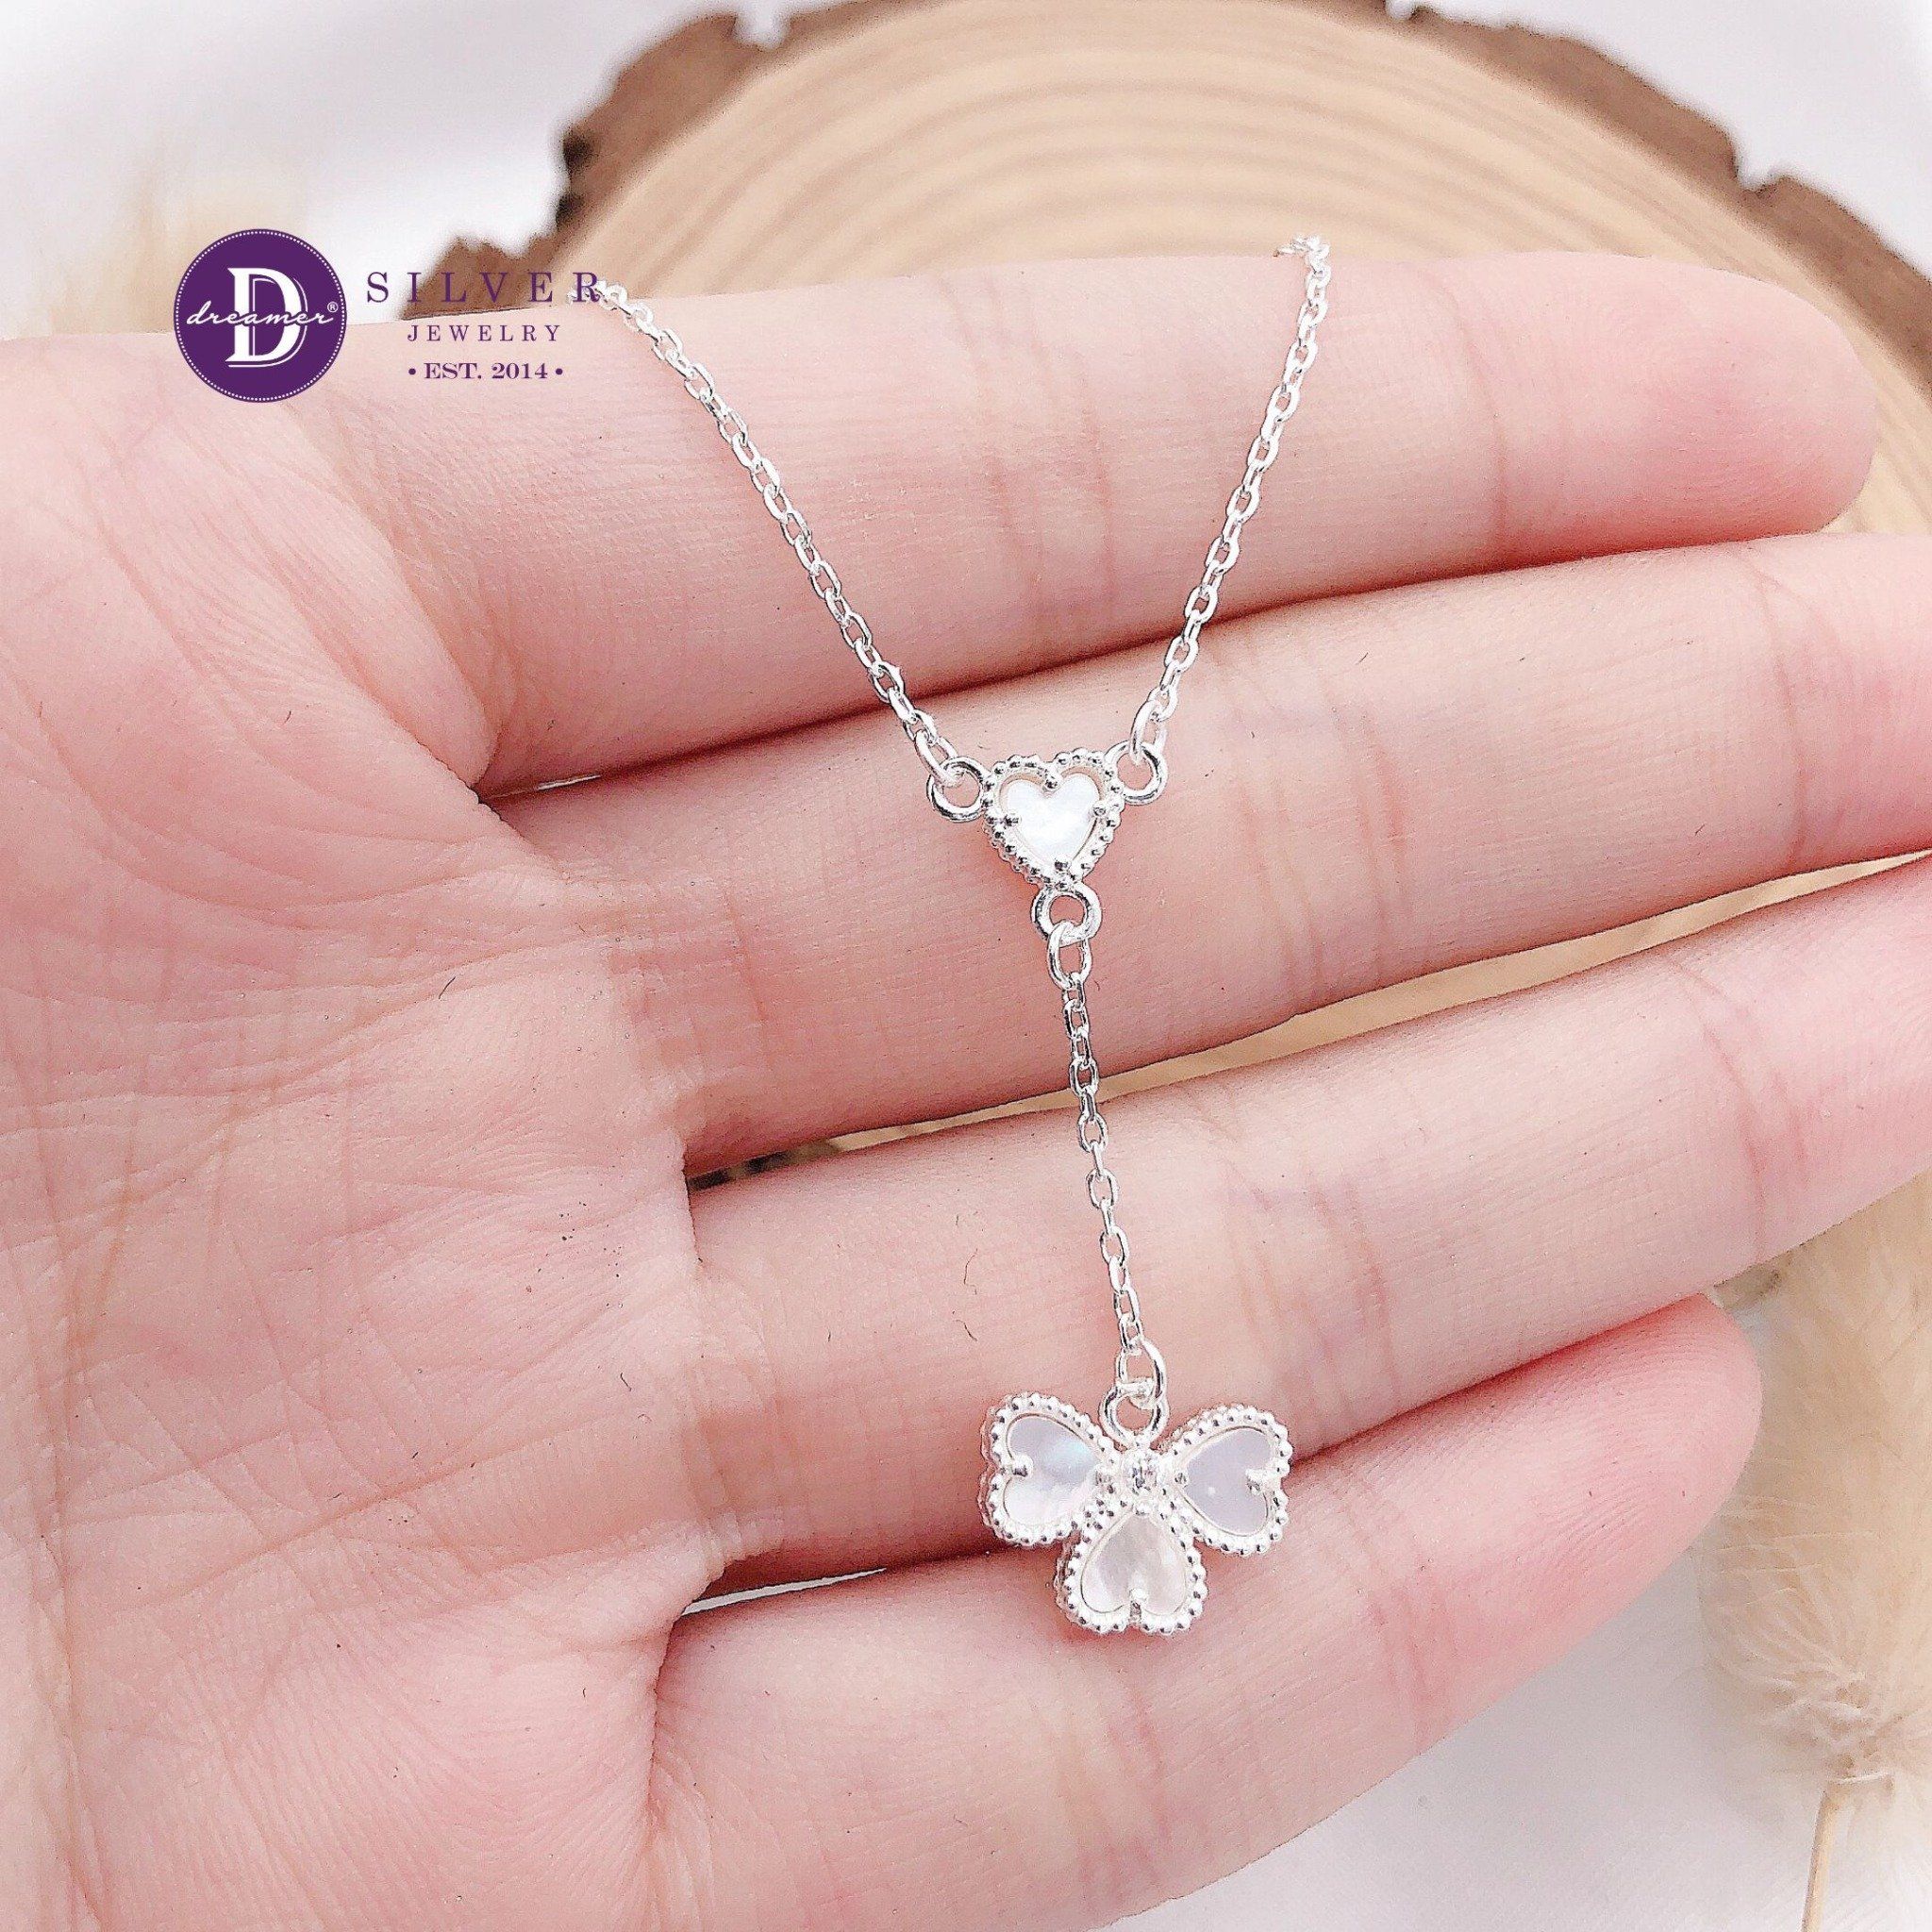  Dây Chuyền Nữ Cỏ 4 Lá Xà Cừ - Heart Lucky Flower - Silver 925 Necklace Ddreamer - 1182DCH 